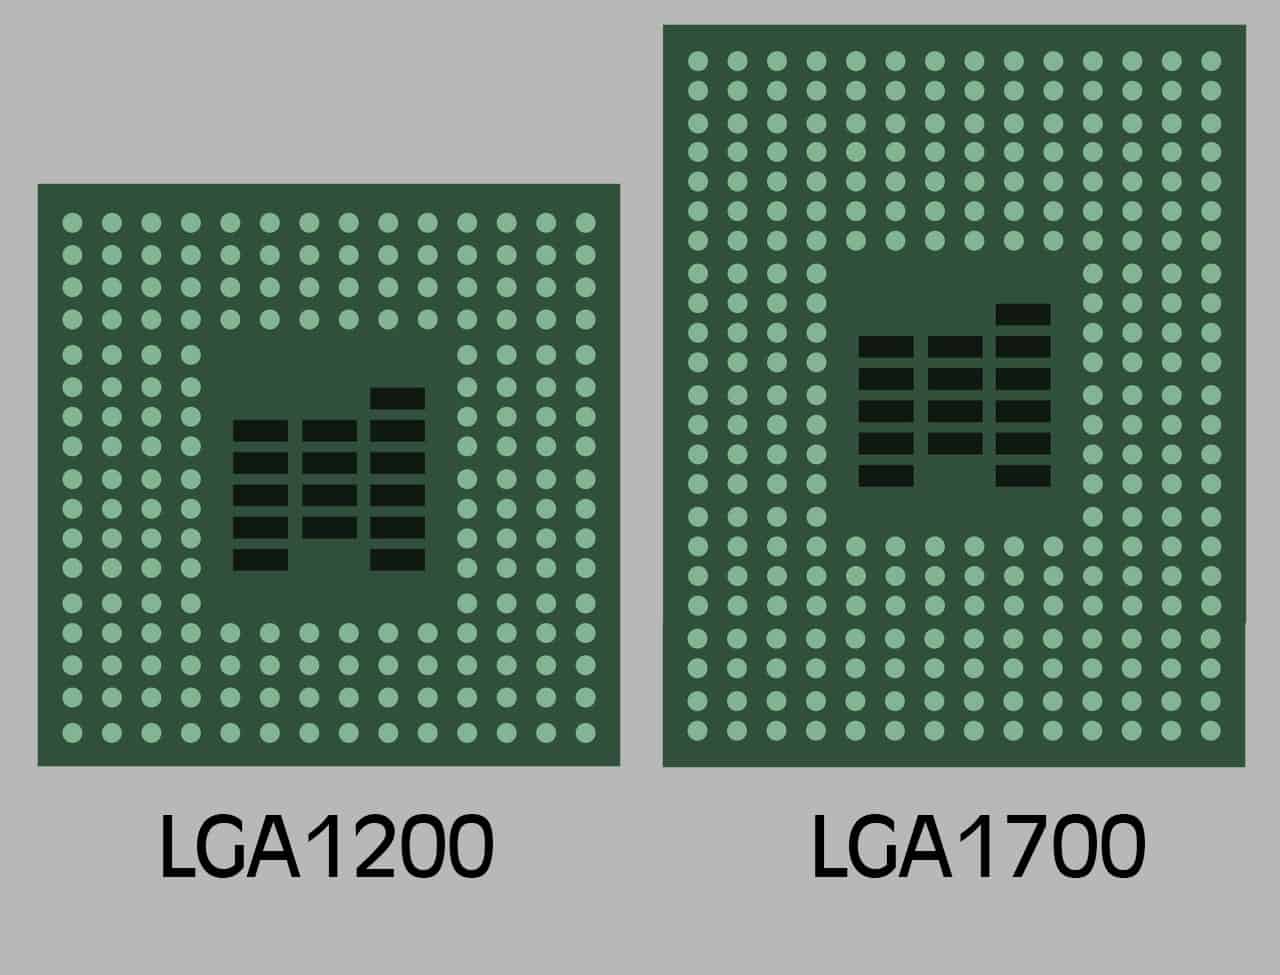 LGA 1200 and LGA 1700 Intel CPU Socket